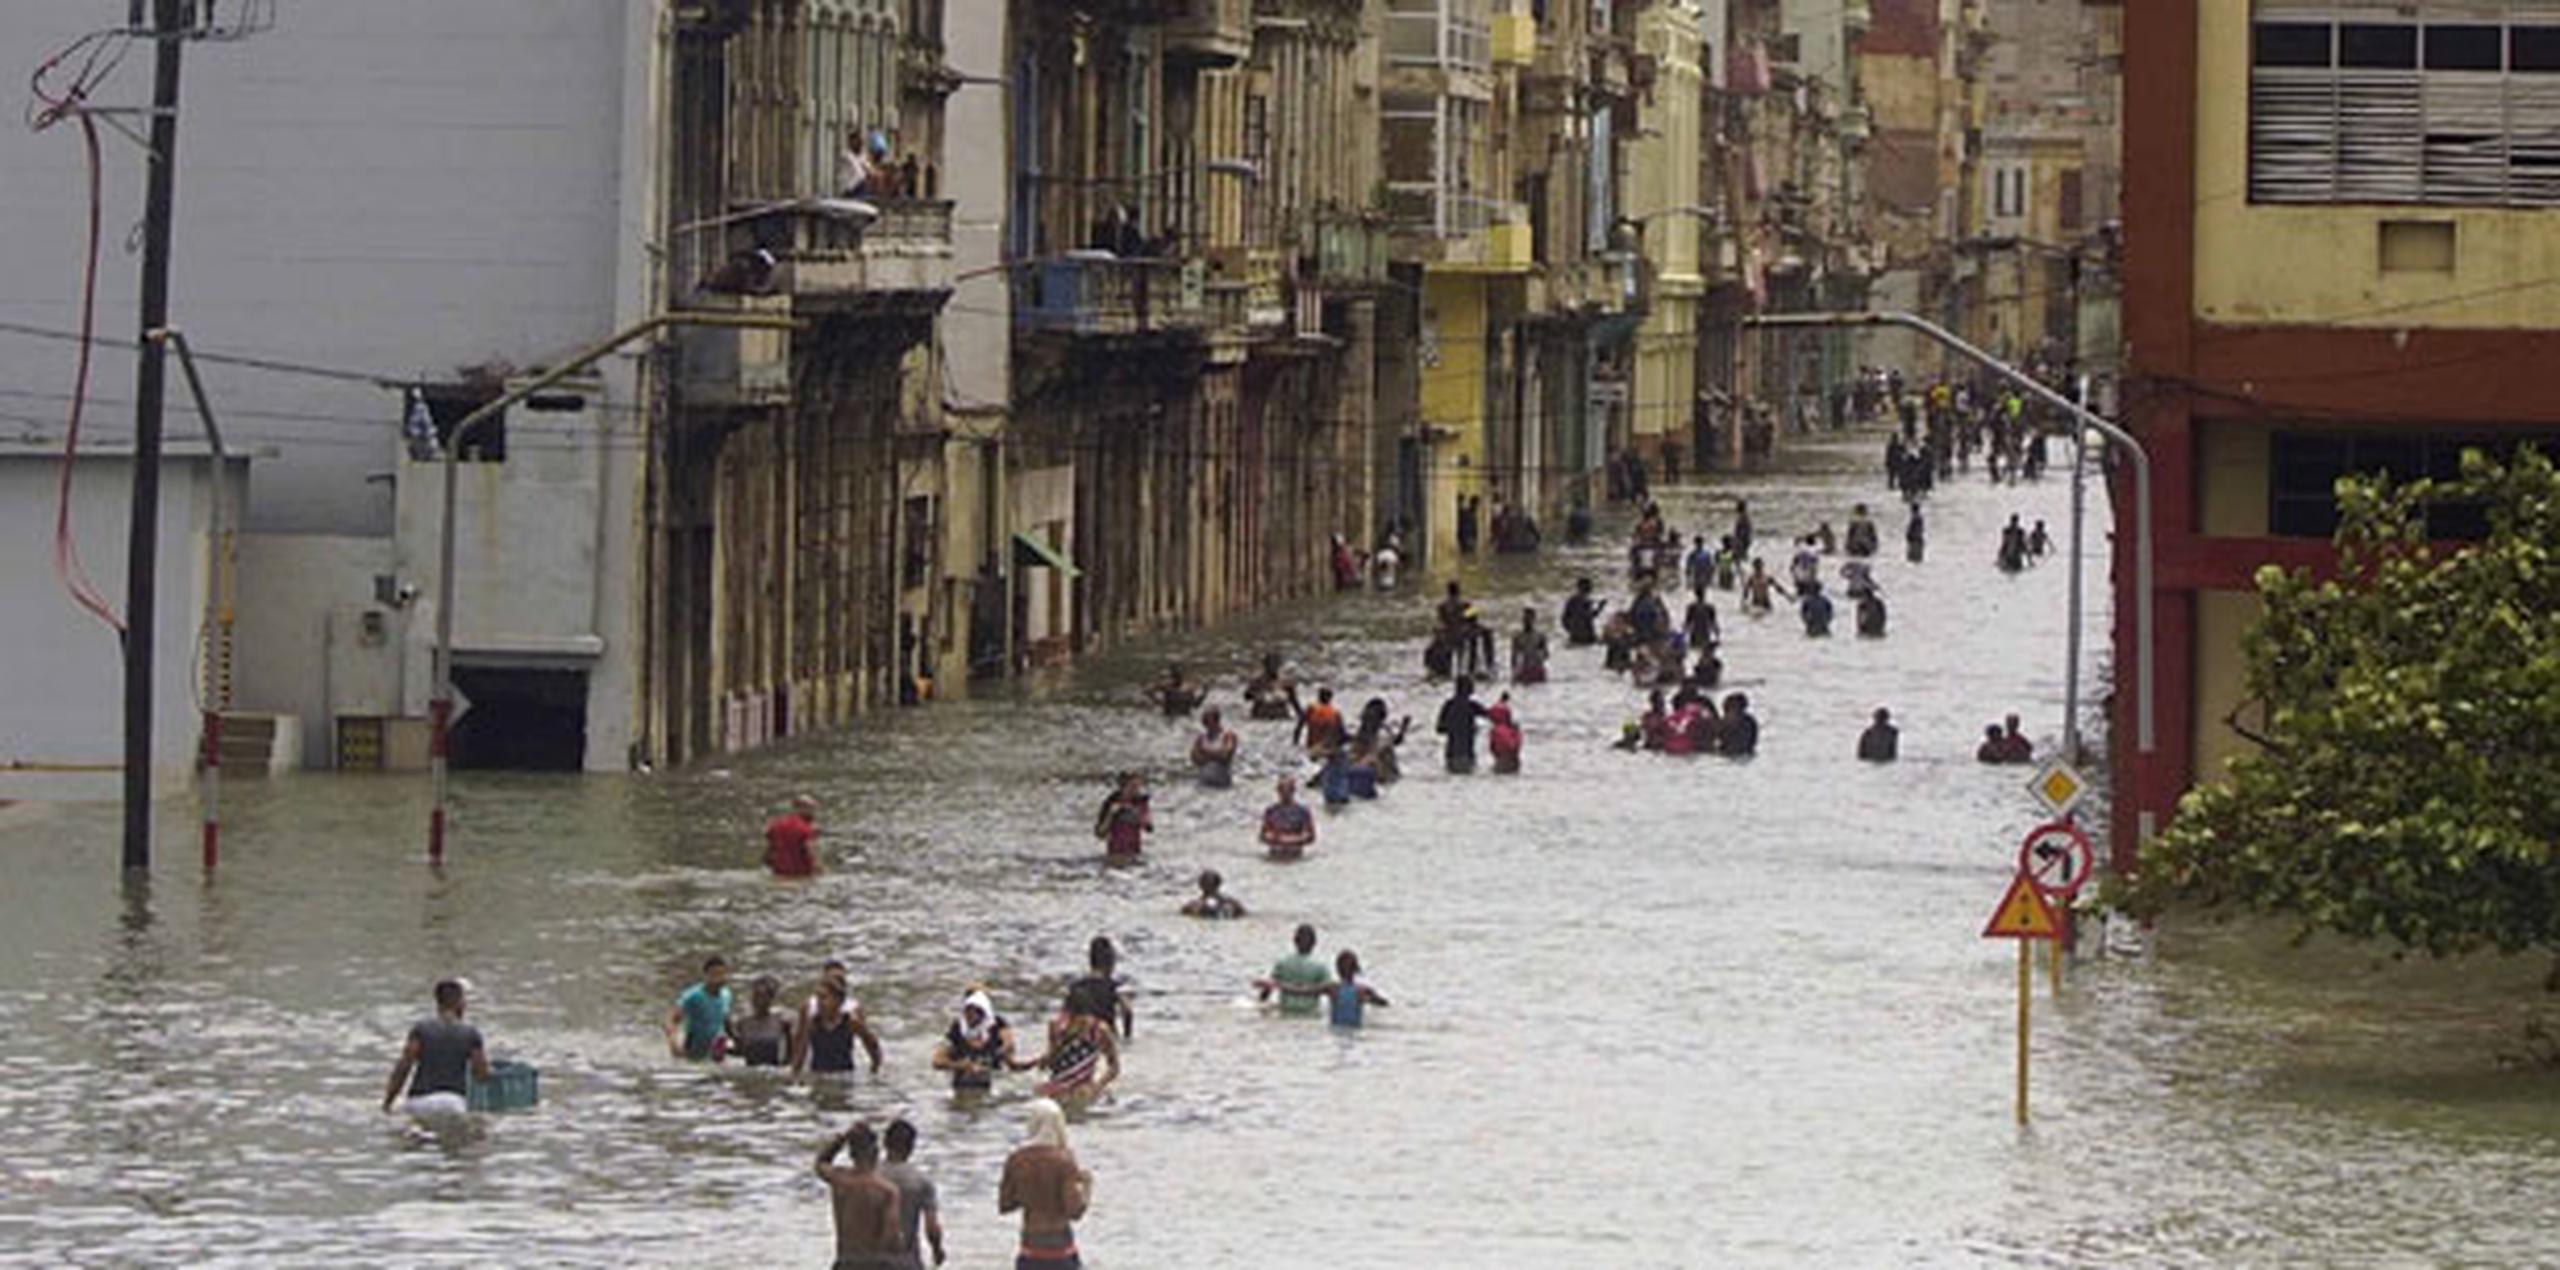 Olas de seis metros (20 pies) de alto continuaban azotando La Habana, y el segundo jefe del Estado Mayor nacional de la Defensa Civil, coronel Luis Ángel Macareno, señaló que las inundaciones podrían persistir hasta el lunes.  (AP)